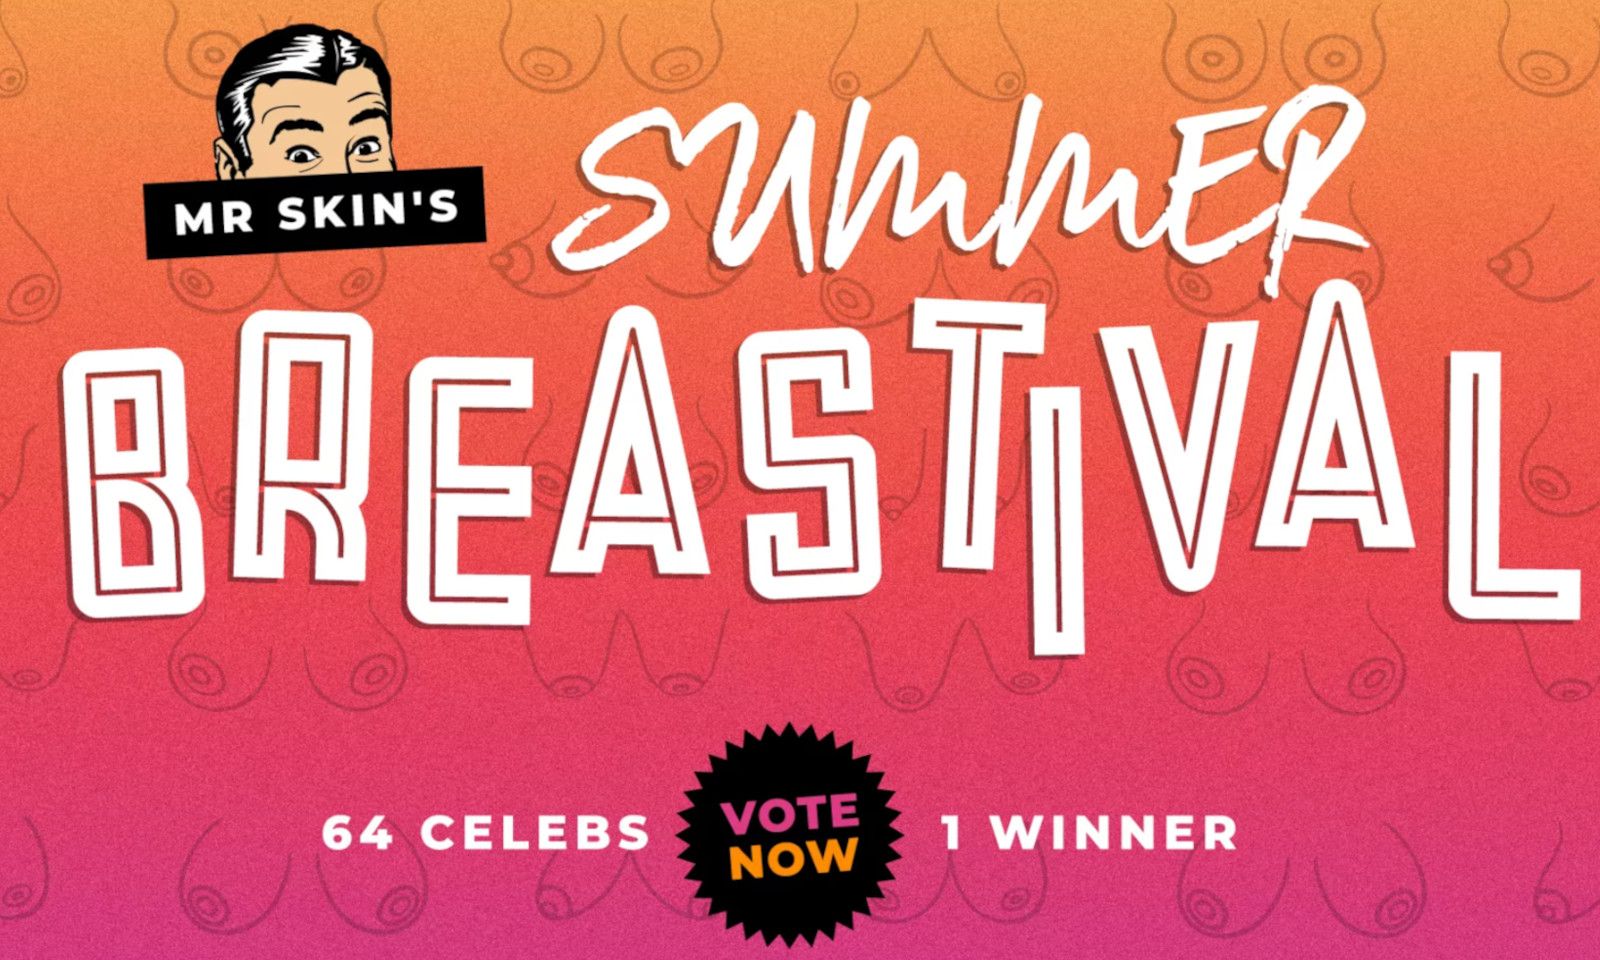 Alexandra Daddario Wins Mr. Skin’s 'Summer Breastival'